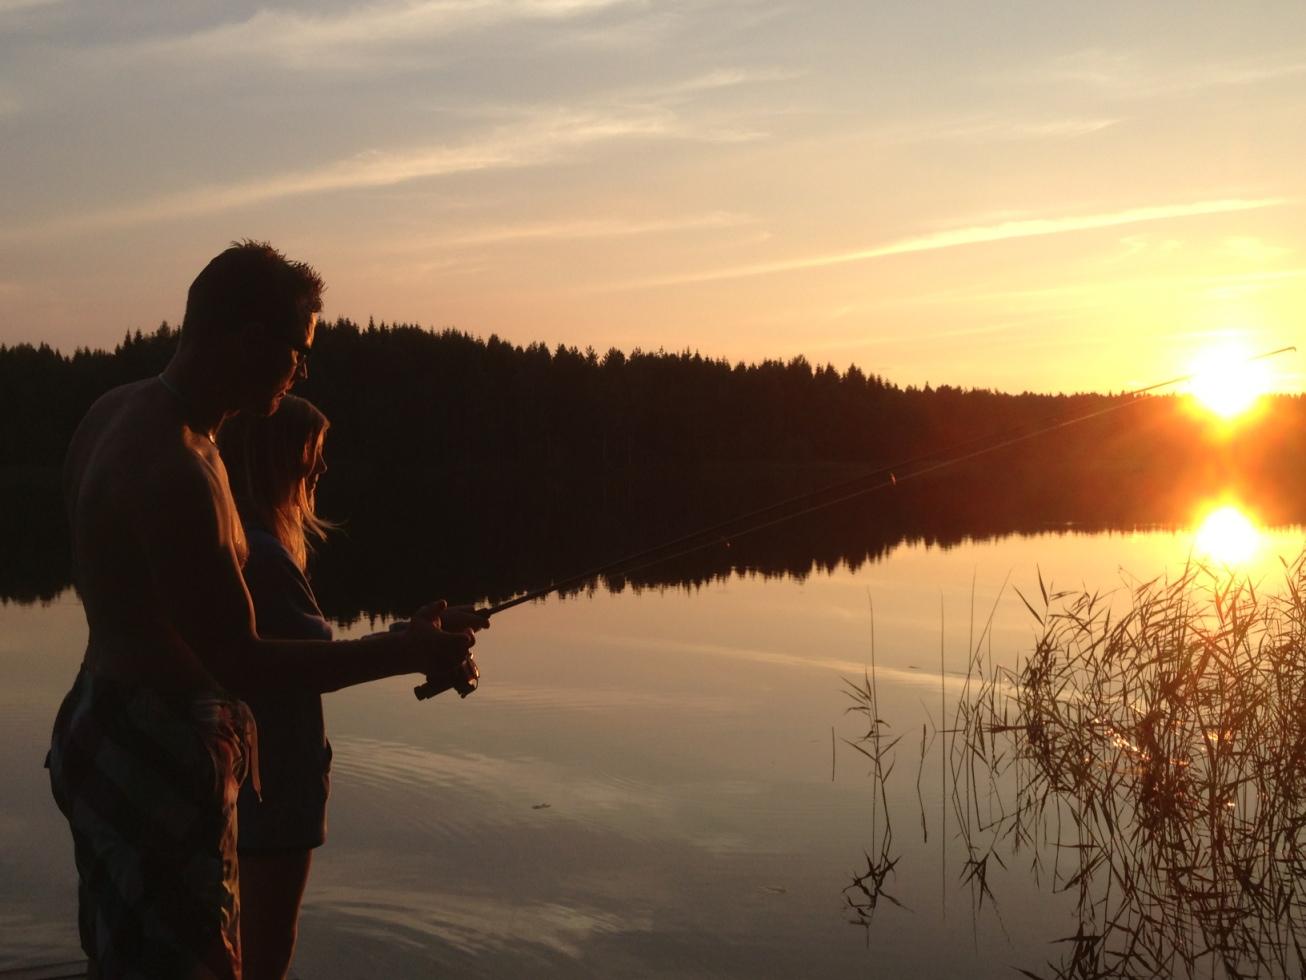 Kan en svensk sommar bli bättre än en fiskestund vid solnedgången?